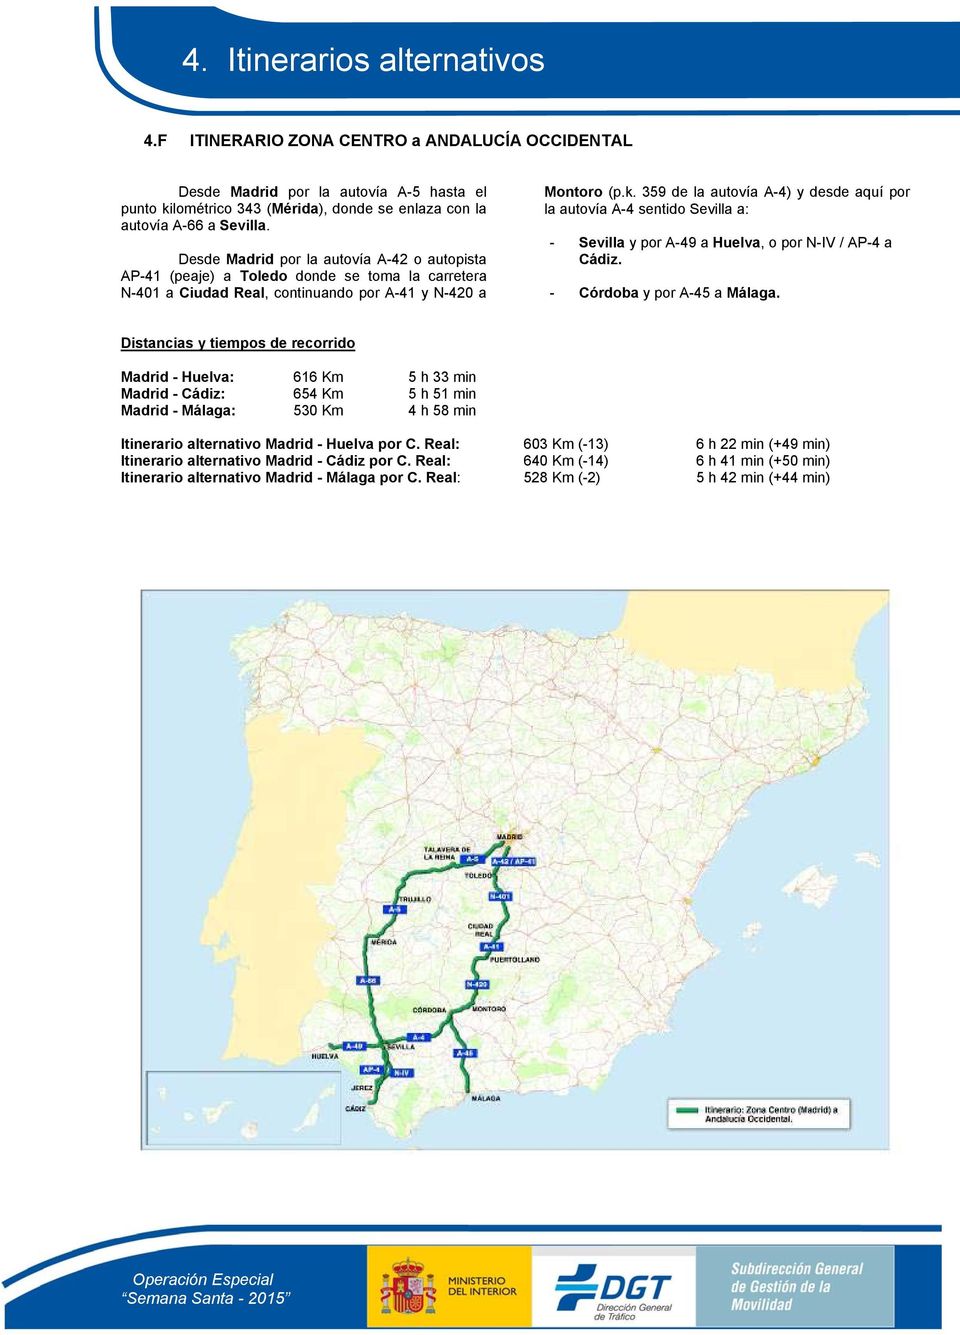 359 de la autovía A-4) y desde aquí por la autovía A-4 sentido Sevilla a: - Sevilla y por A-49 a Huelva, o por N-IV / AP-4 a Cádiz. - Córdoba y por A-45 a Málaga.